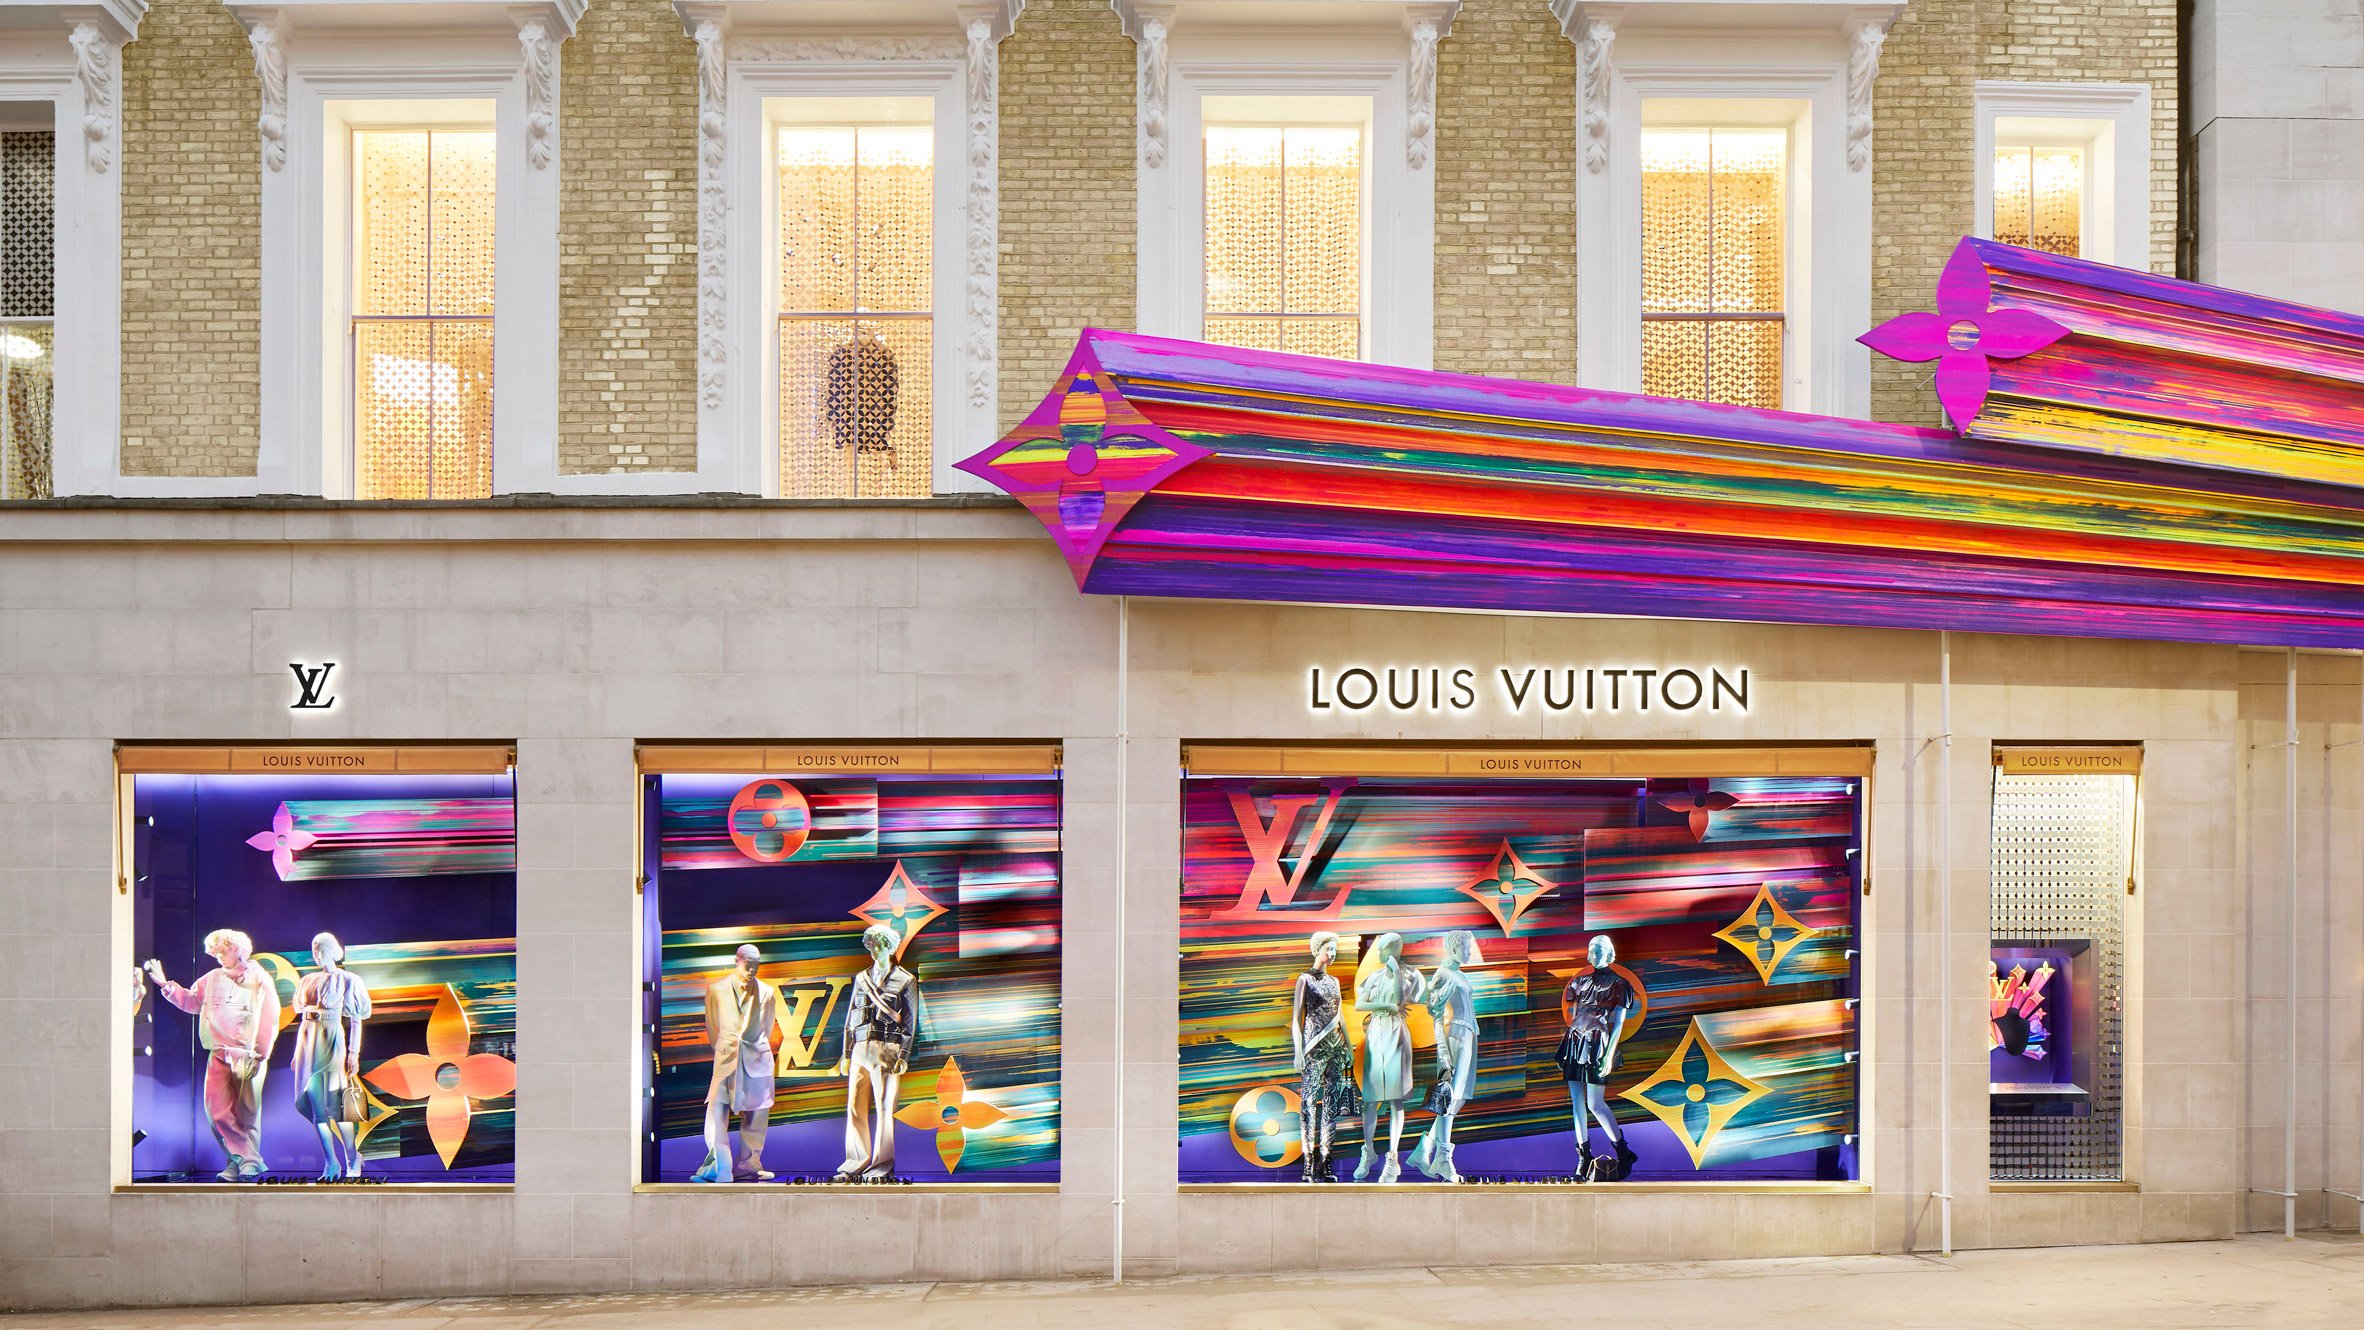 Butik Louis Vuitton w Londynie po remoncie